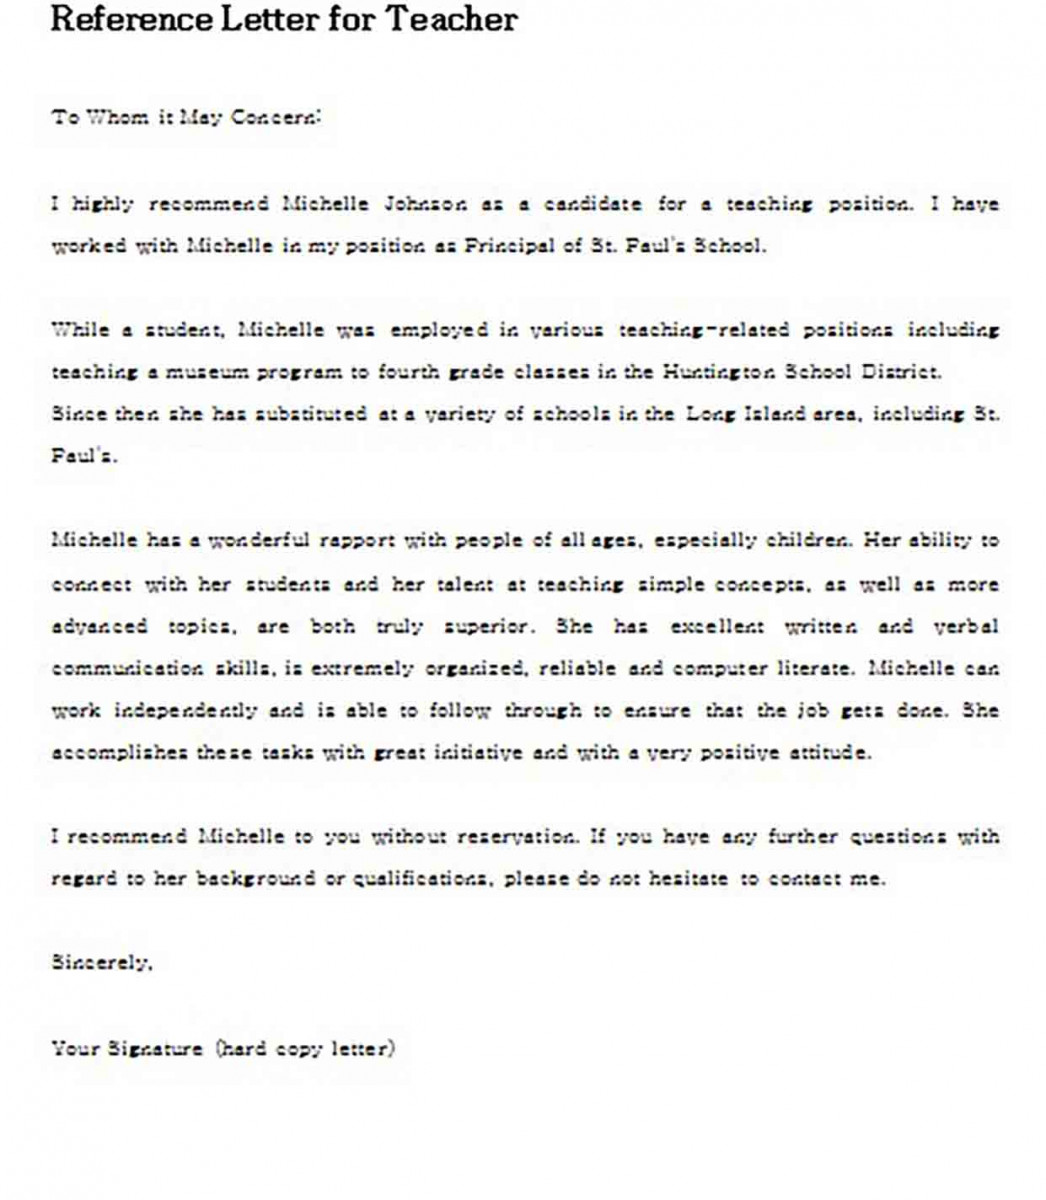 Reference Letter for Teacher